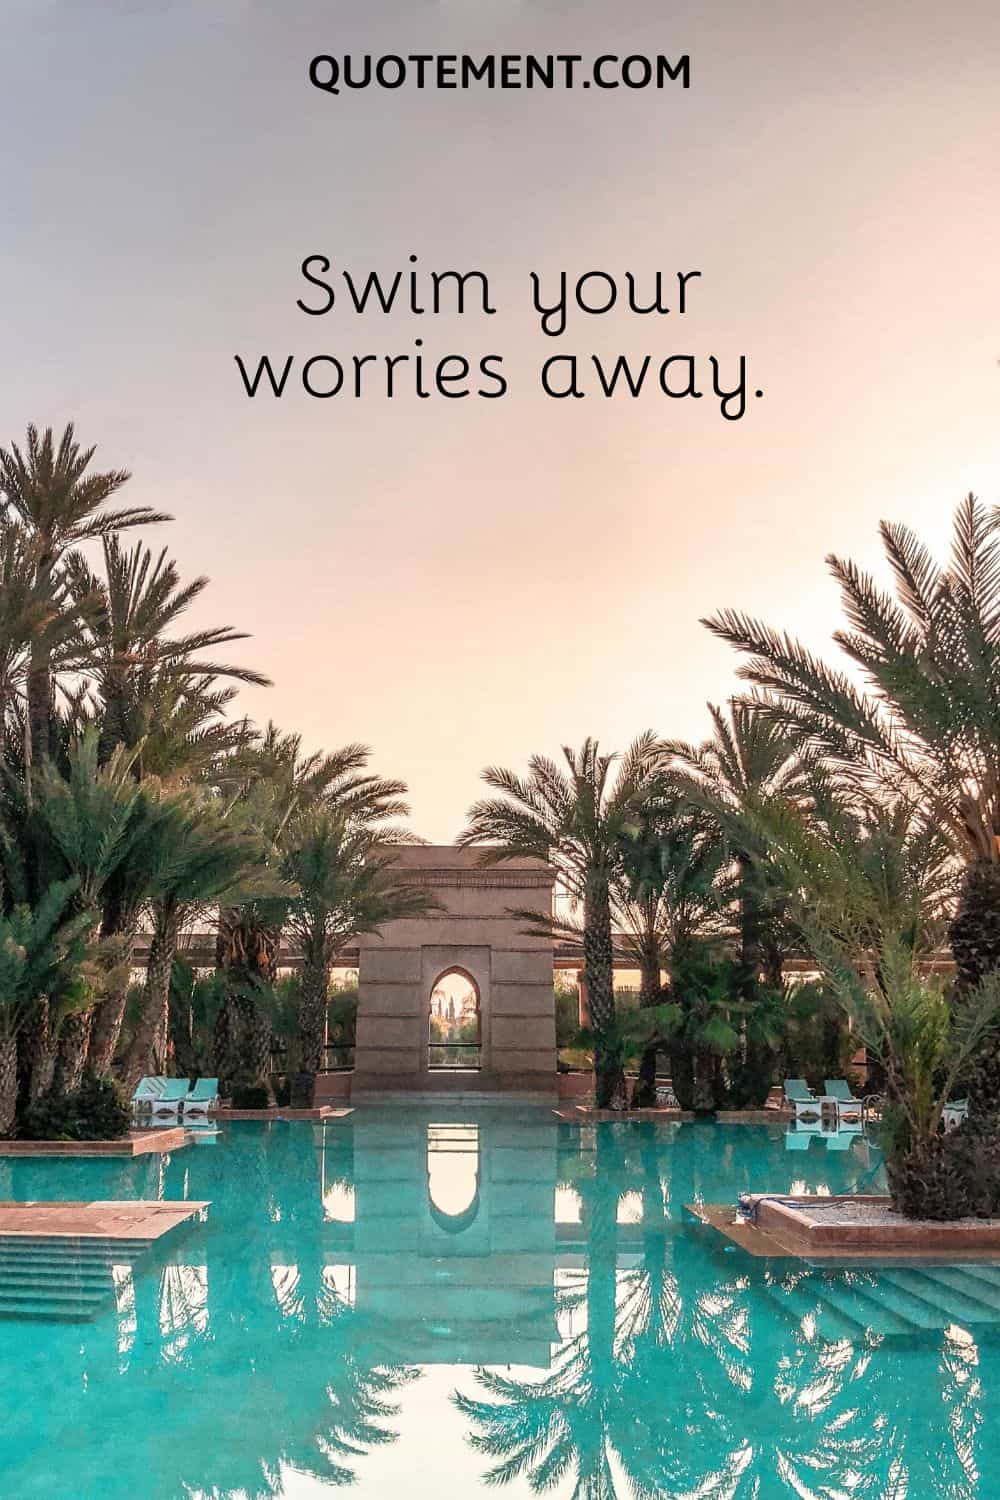 Swim your worries away.